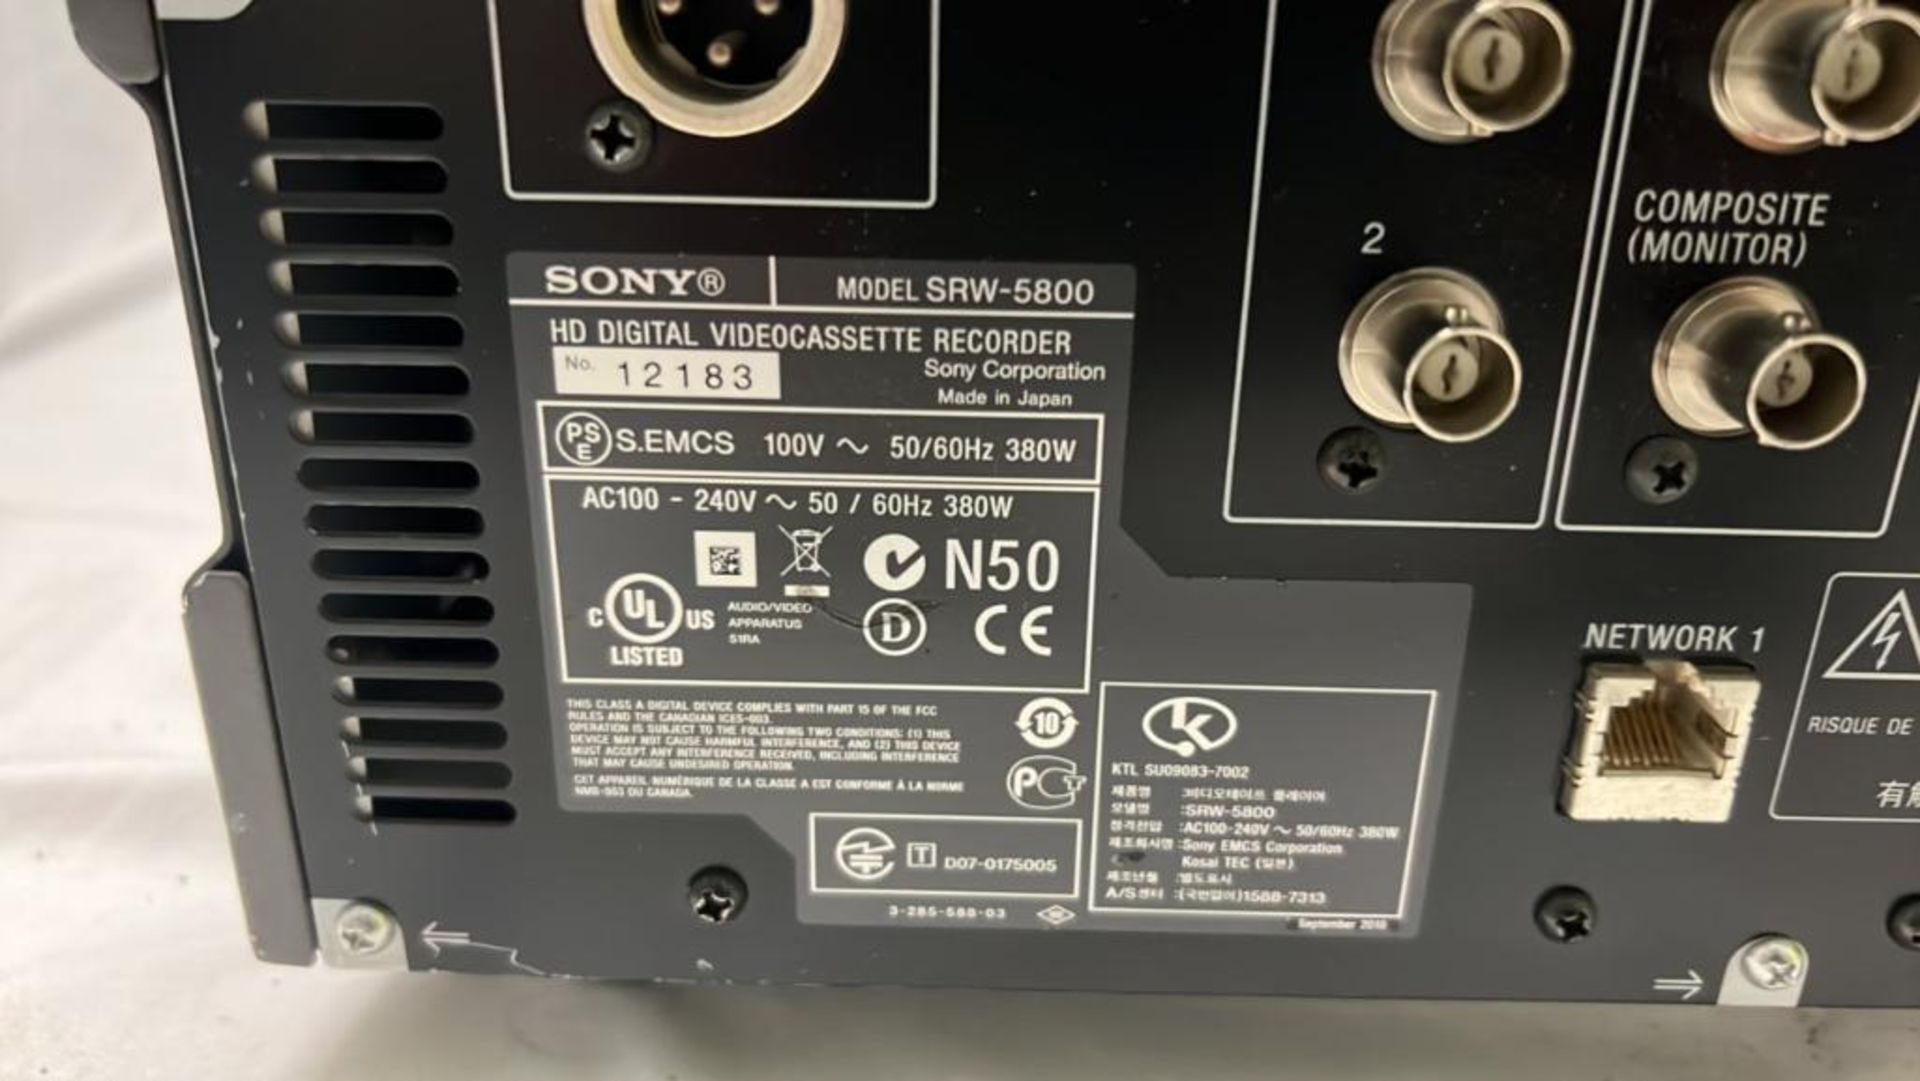 Sony SRW-5800/2 HDCAM Studio Recorder with flight case SN: 12183 - Bild 3 aus 3